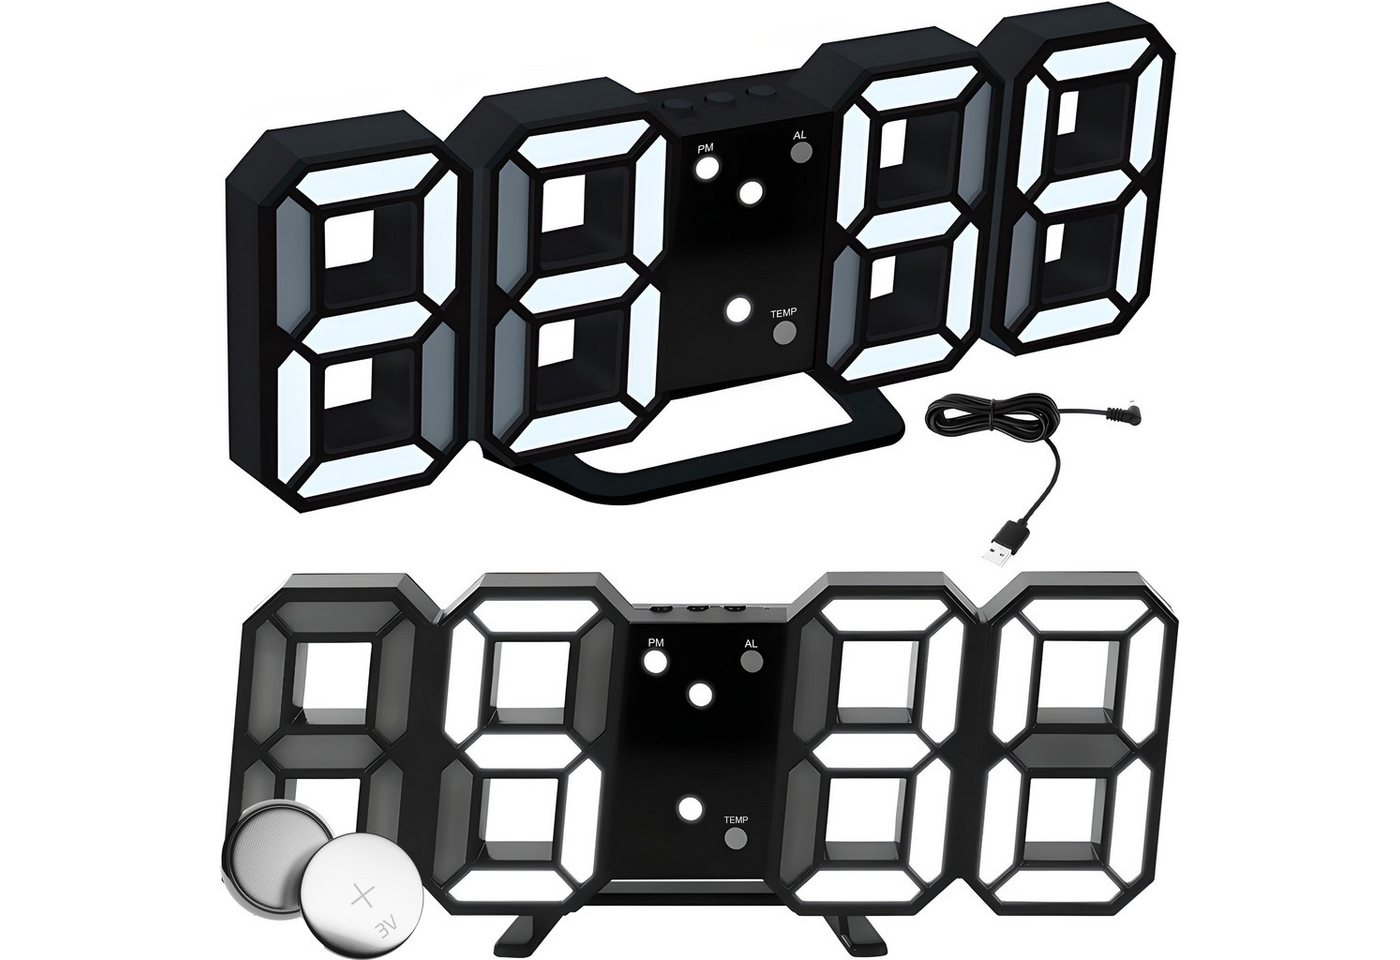 Retoo Wecker 3D Led Wecker Digital Tischuhr Moderne Digitaluhr Alarm Clock Display Uhr mit Weckfunktion, Wecker mit Schlummerfunktion von Retoo